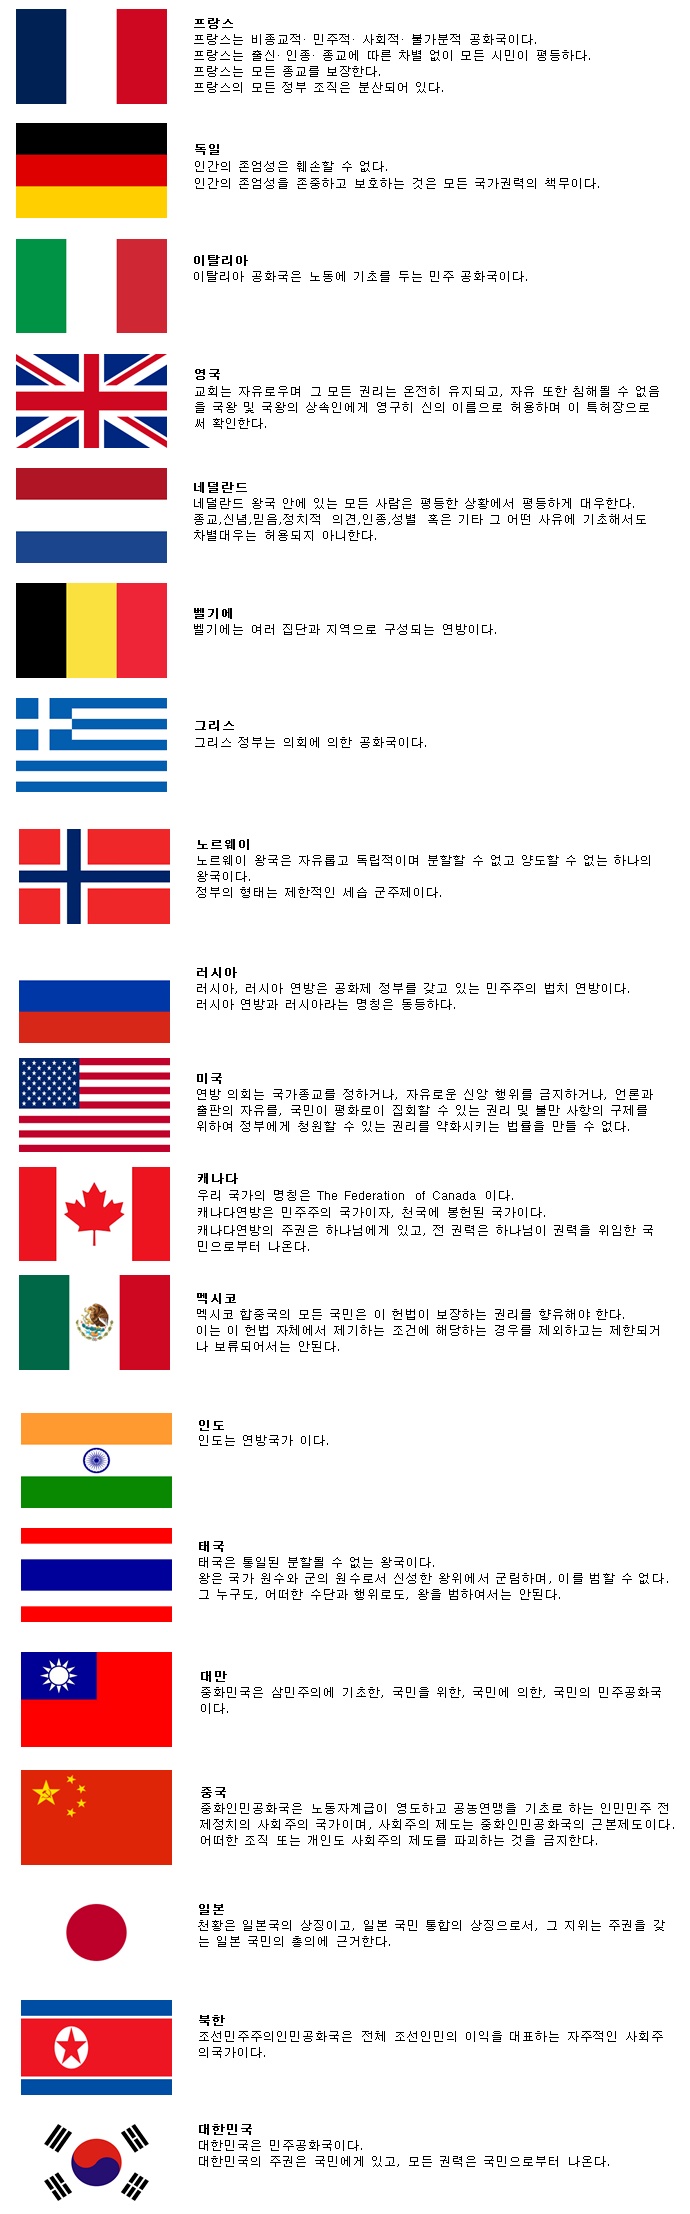 각 나라별 헌법 제 1조 - 대한민국이 제일 멋있네.jpg